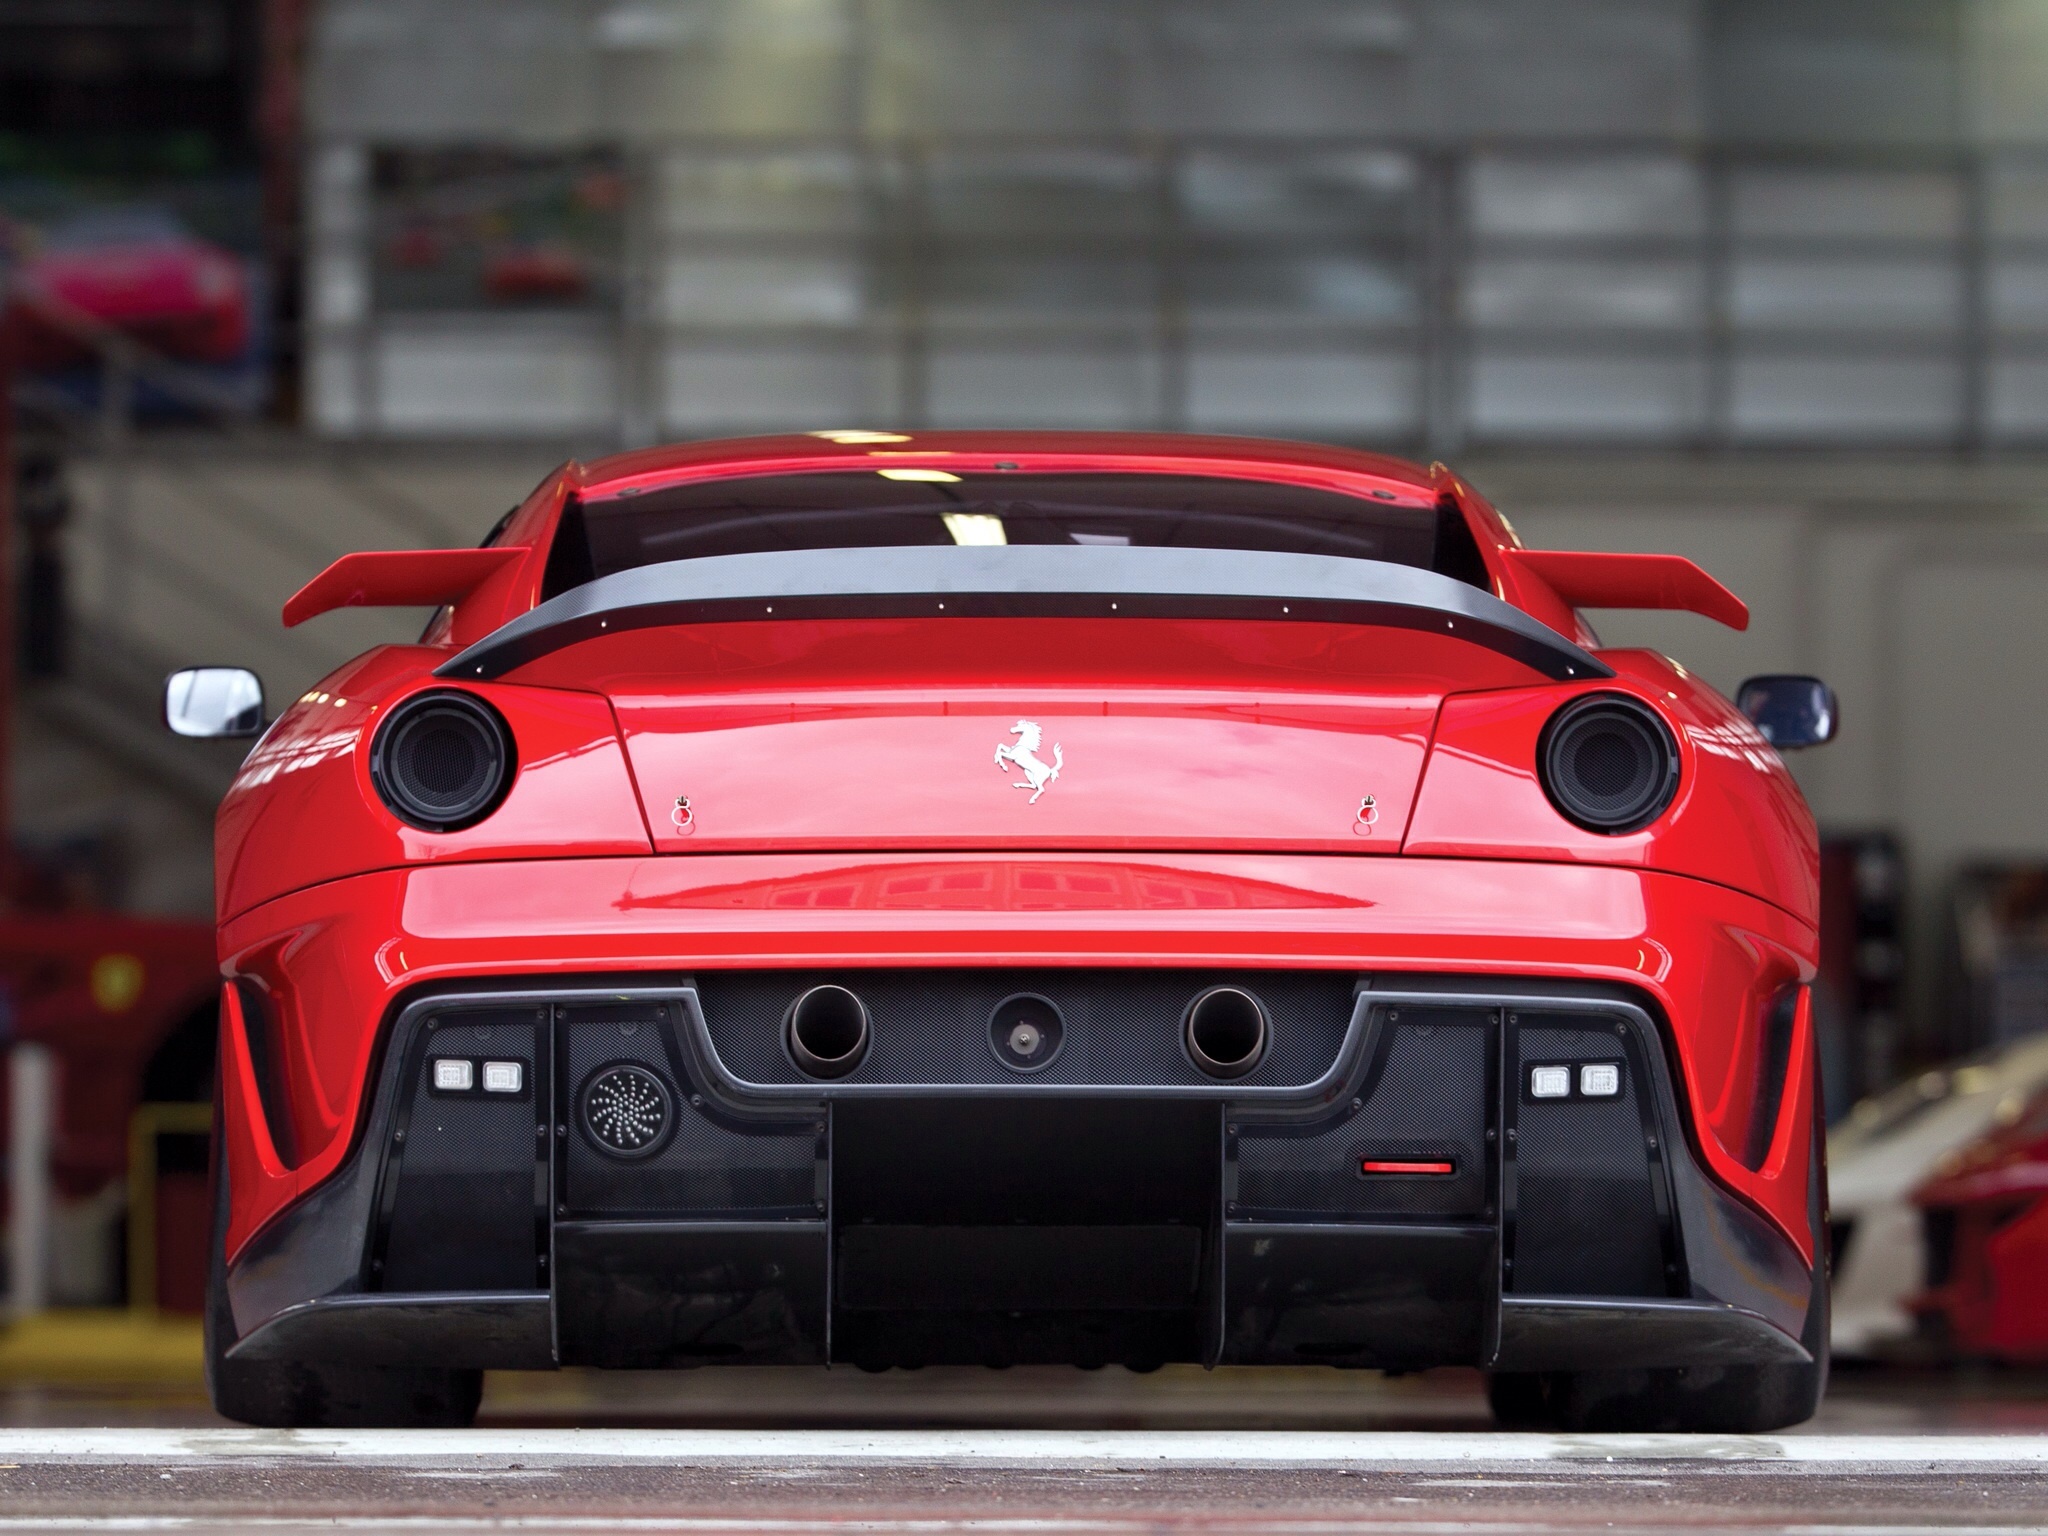 Descargar fondos de escritorio de Ferrari 599Xx HD